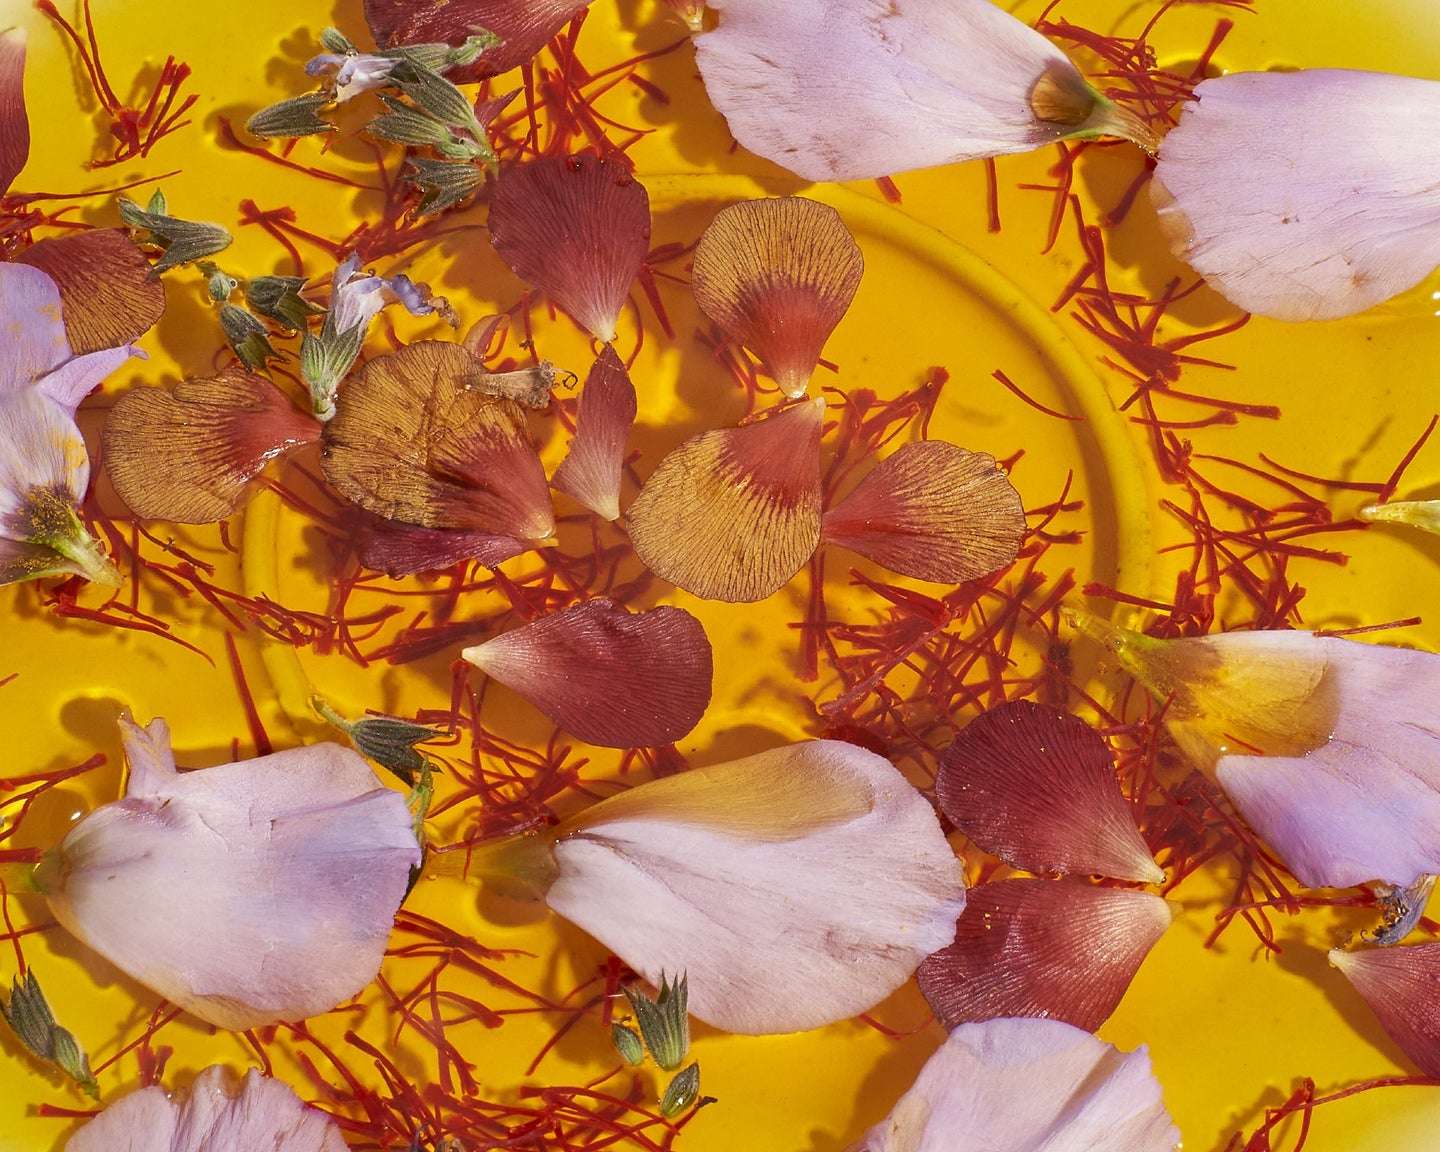 Afghan Saffron Spice by Anne Kim